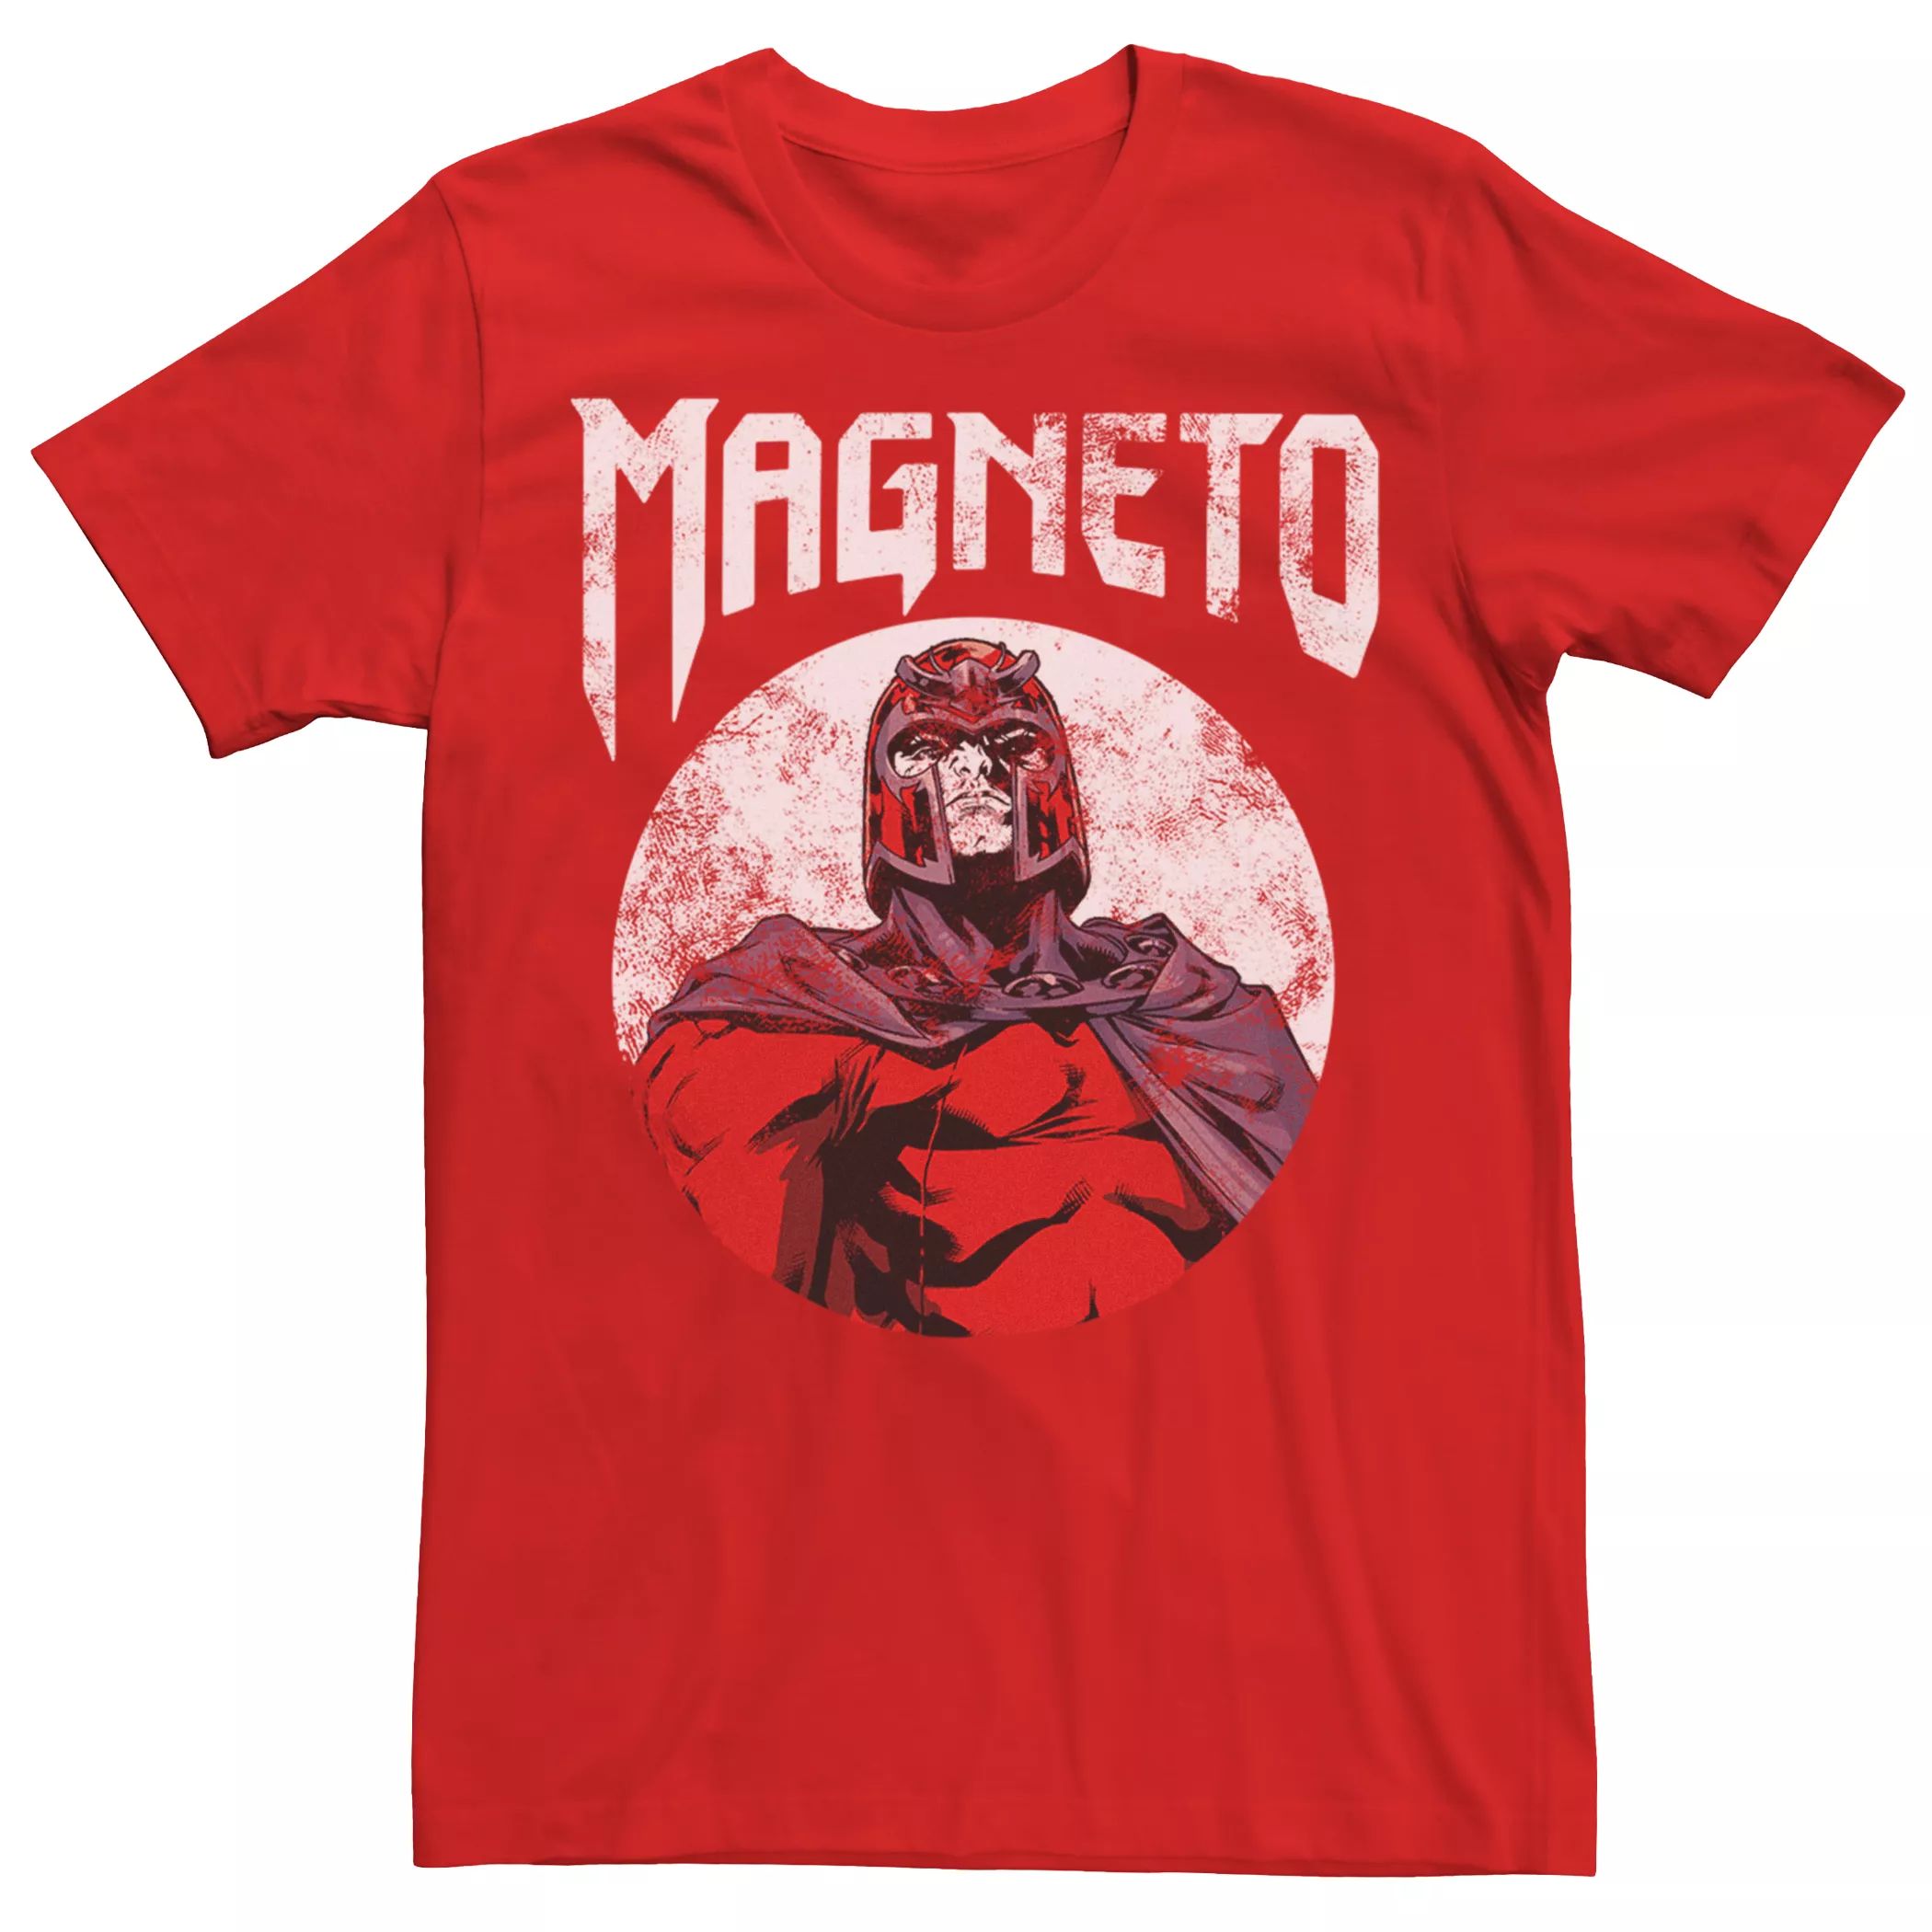 Мужская футболка с графическим рисунком Marvel X-Men Magneto Licensed Character